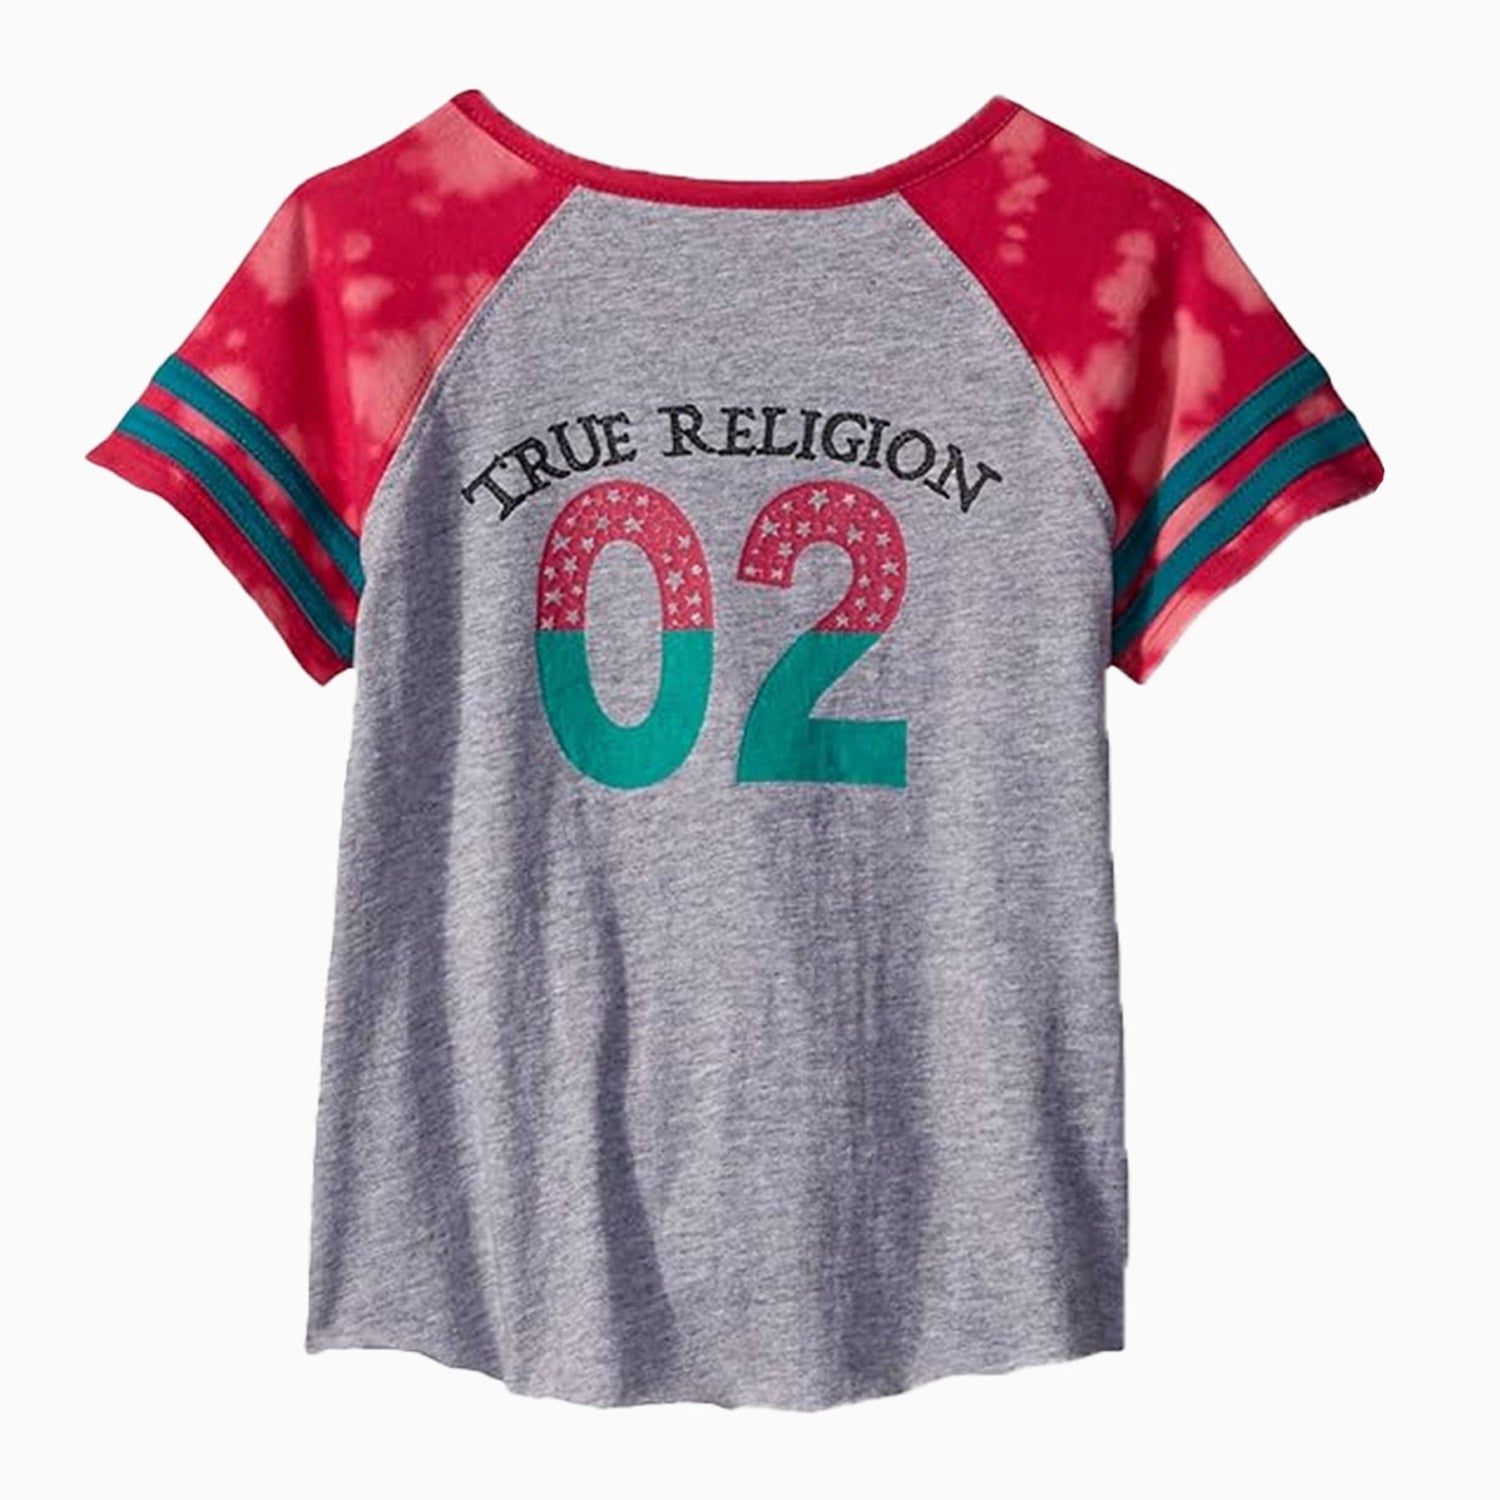 true-religion-kids-football-t-shirt-tr827sk27